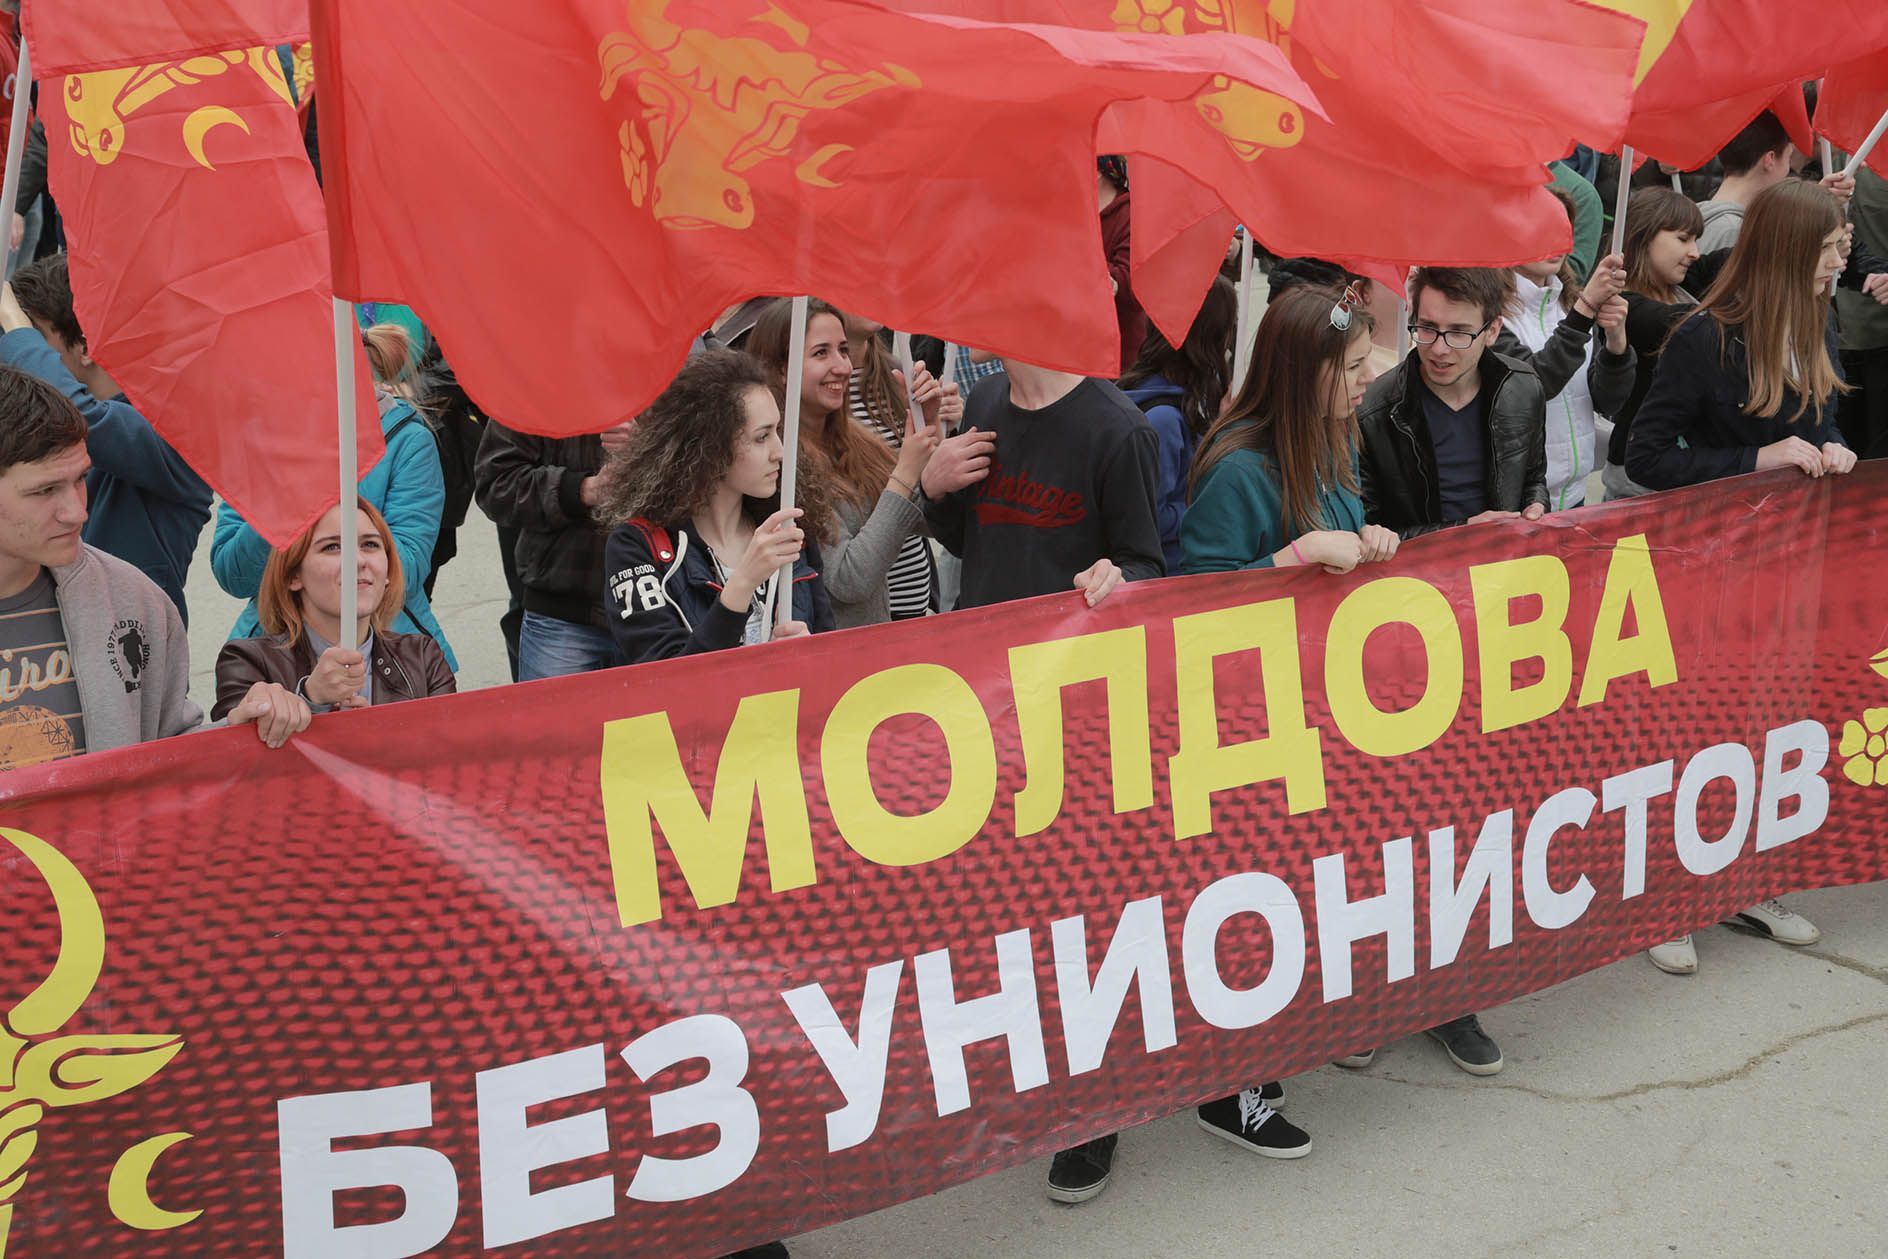 Молдовенизм может стать решением проблемы Приднестровья – эксперт